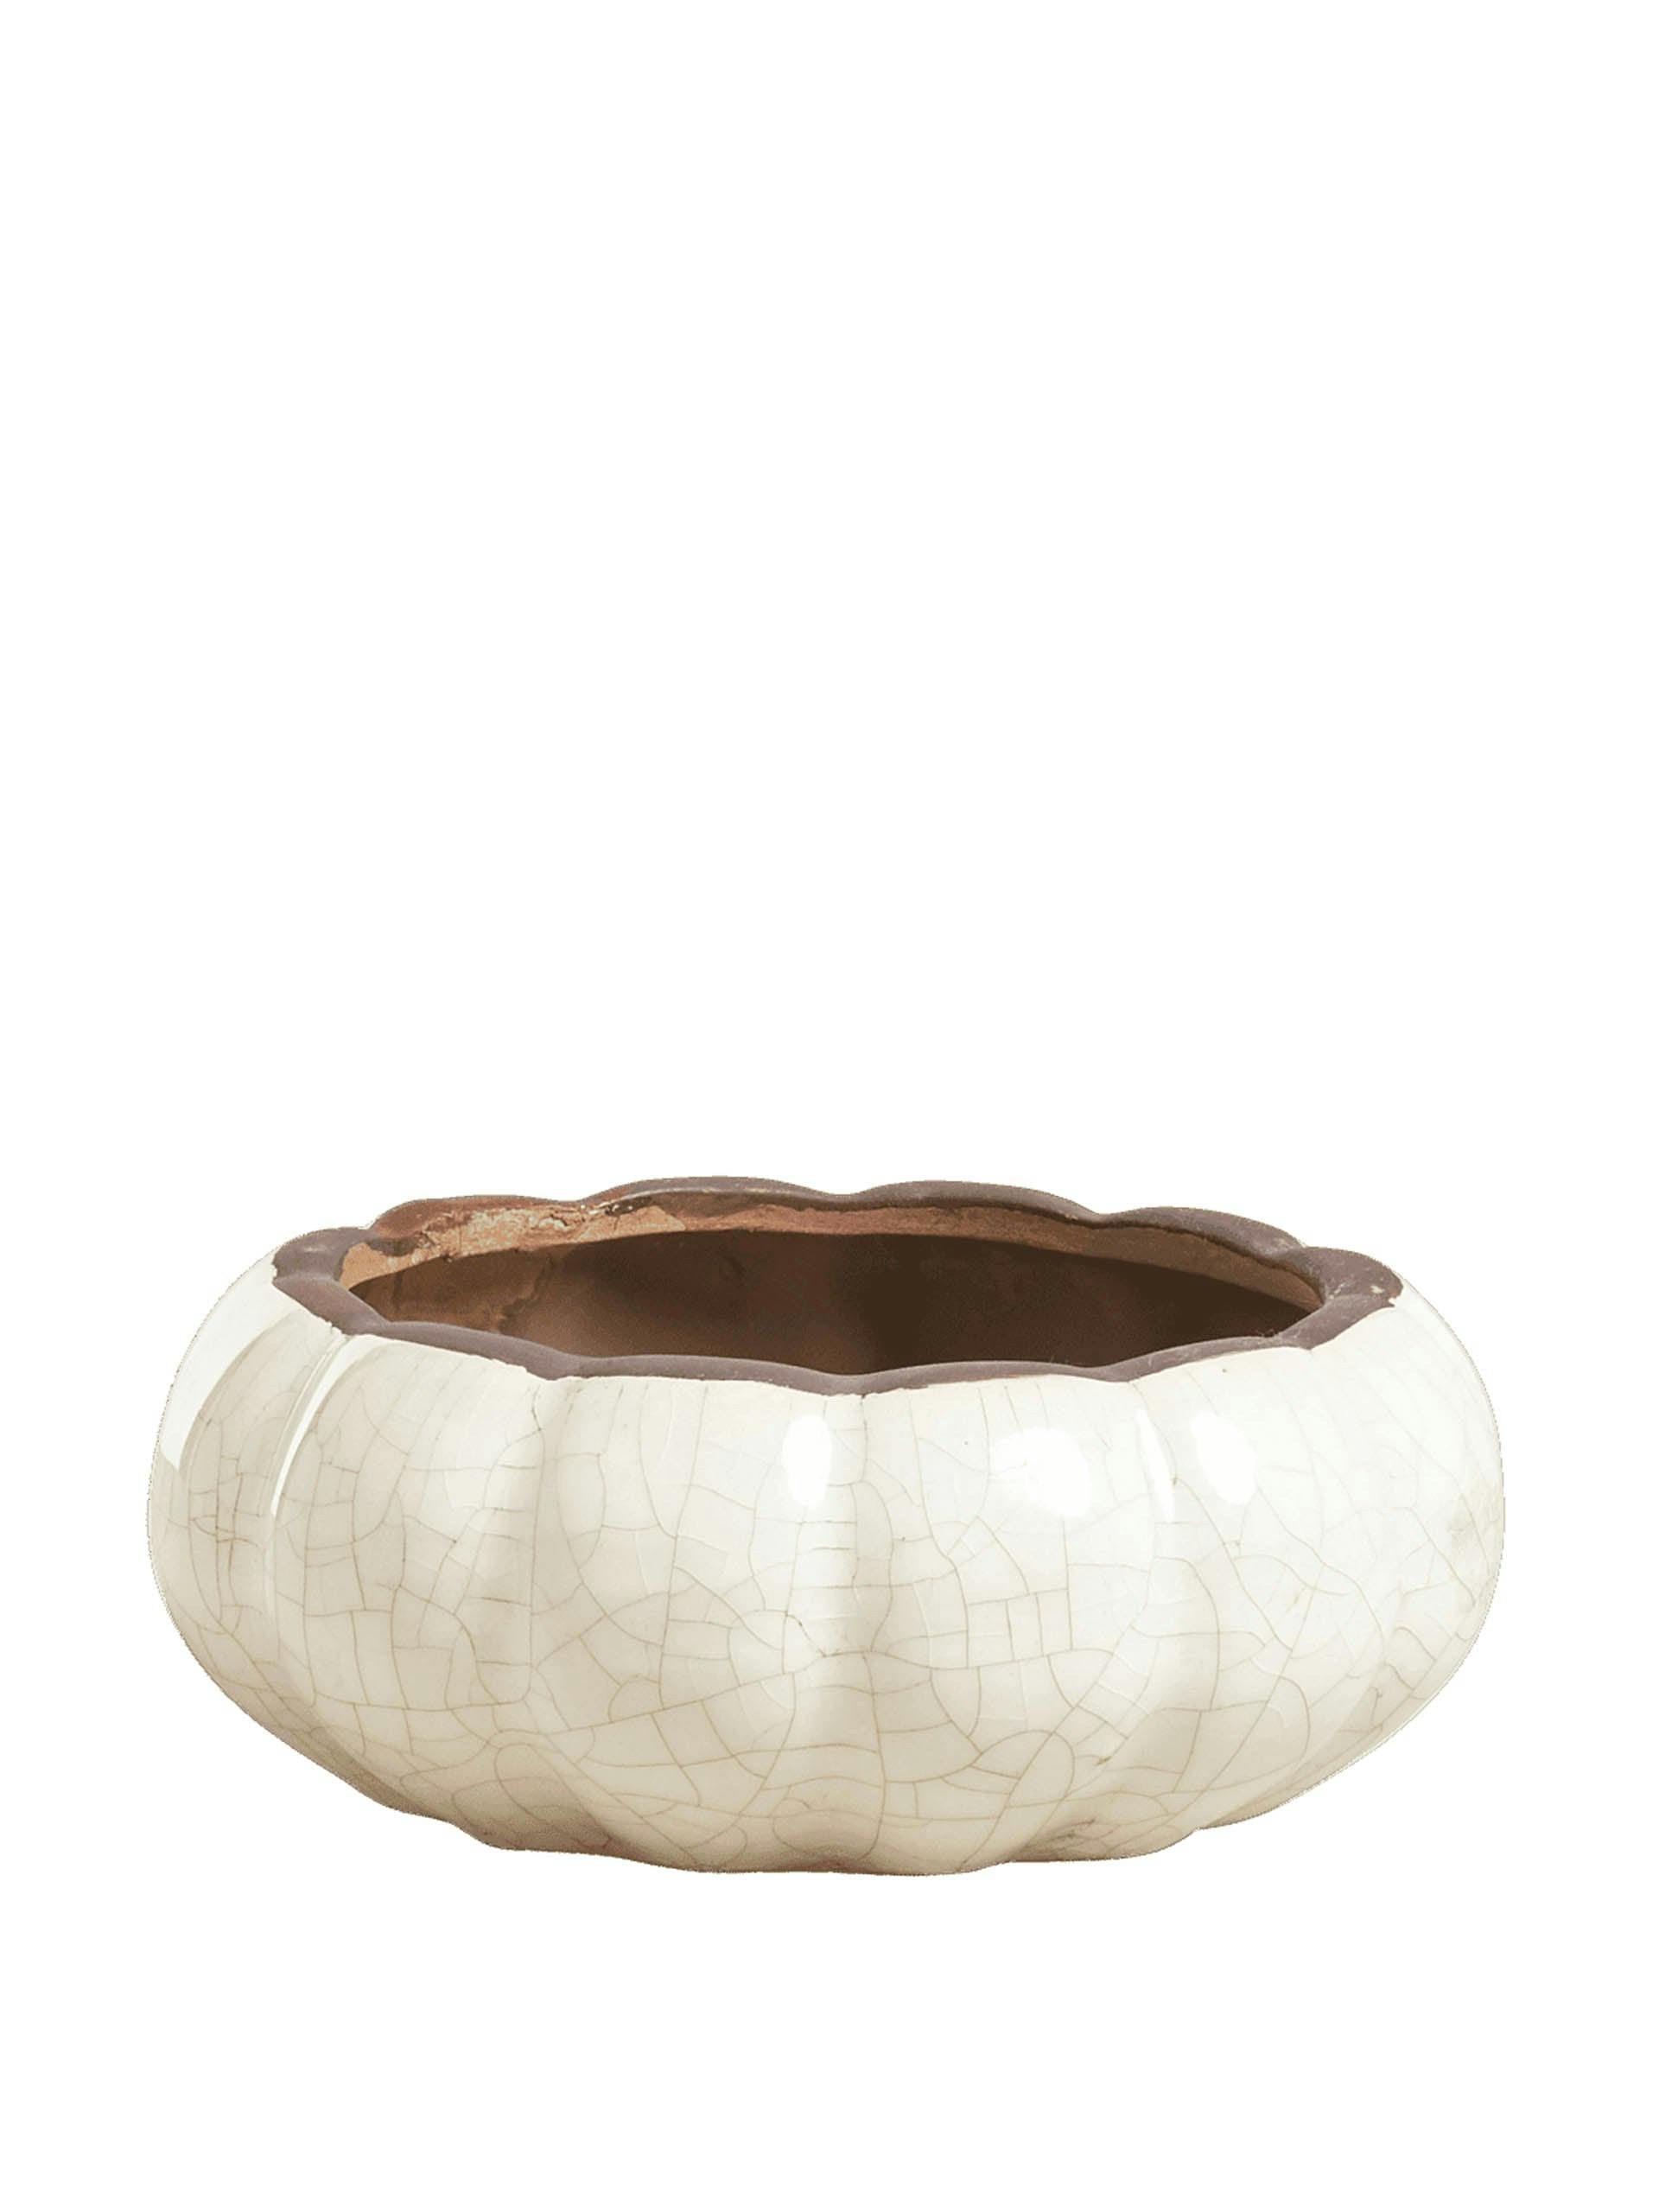 Kolokythi wide decorative bowl